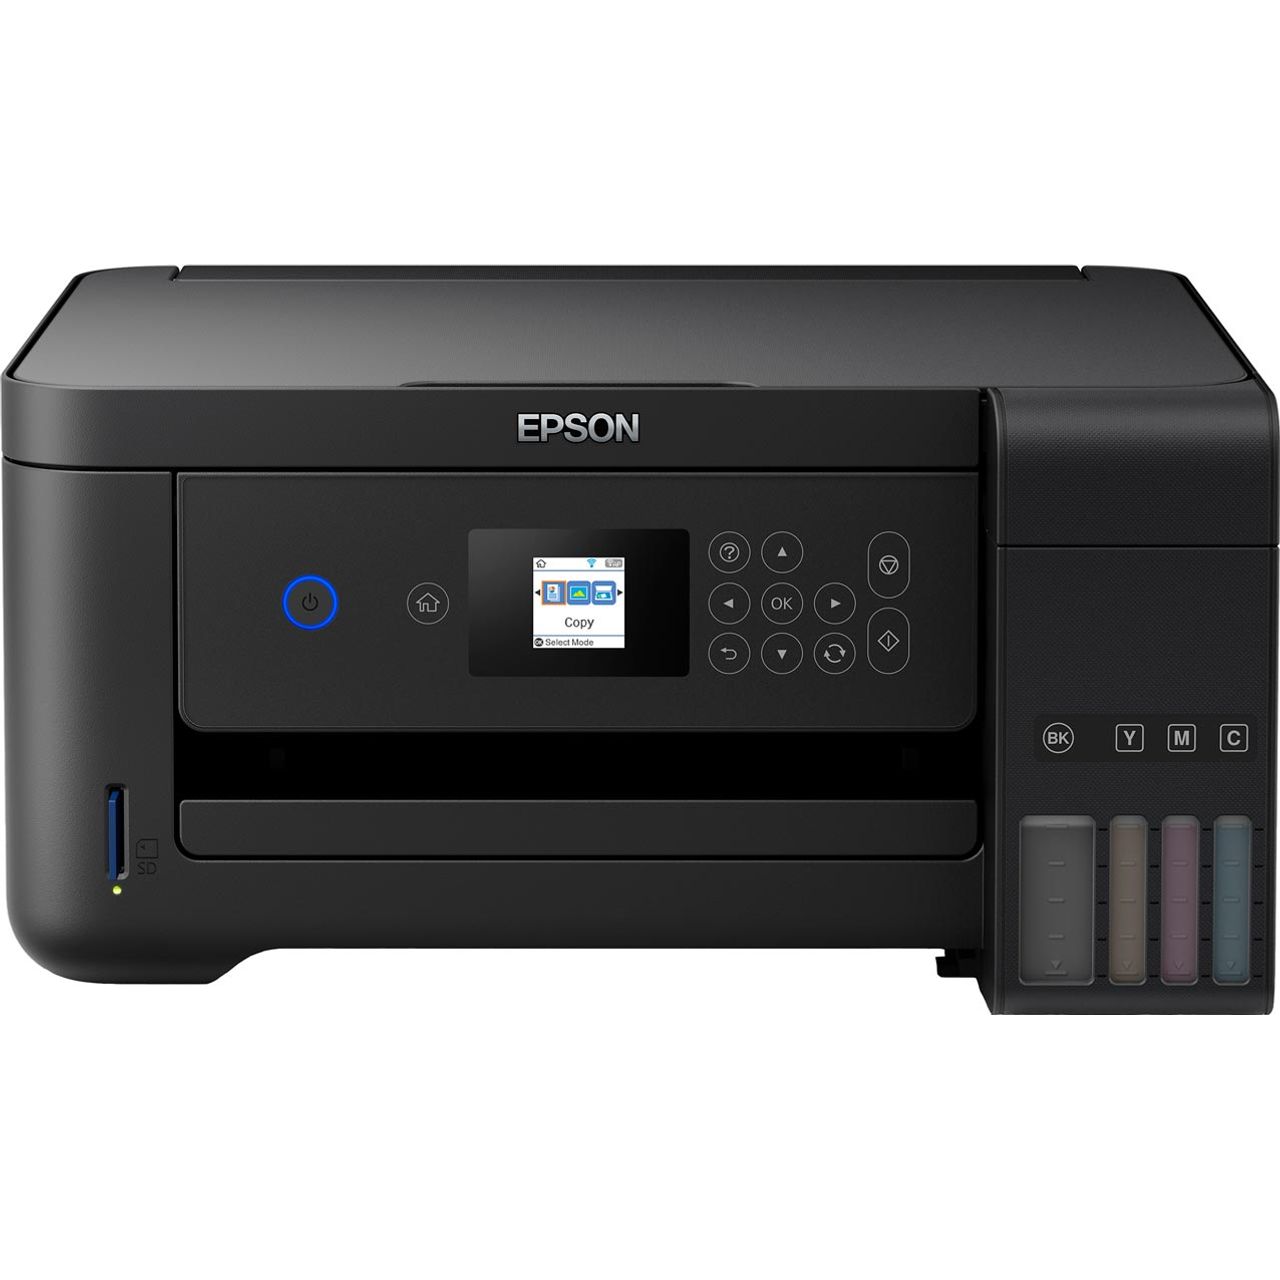 Epson EcoTank ET-2700 Inkjet Printer Review